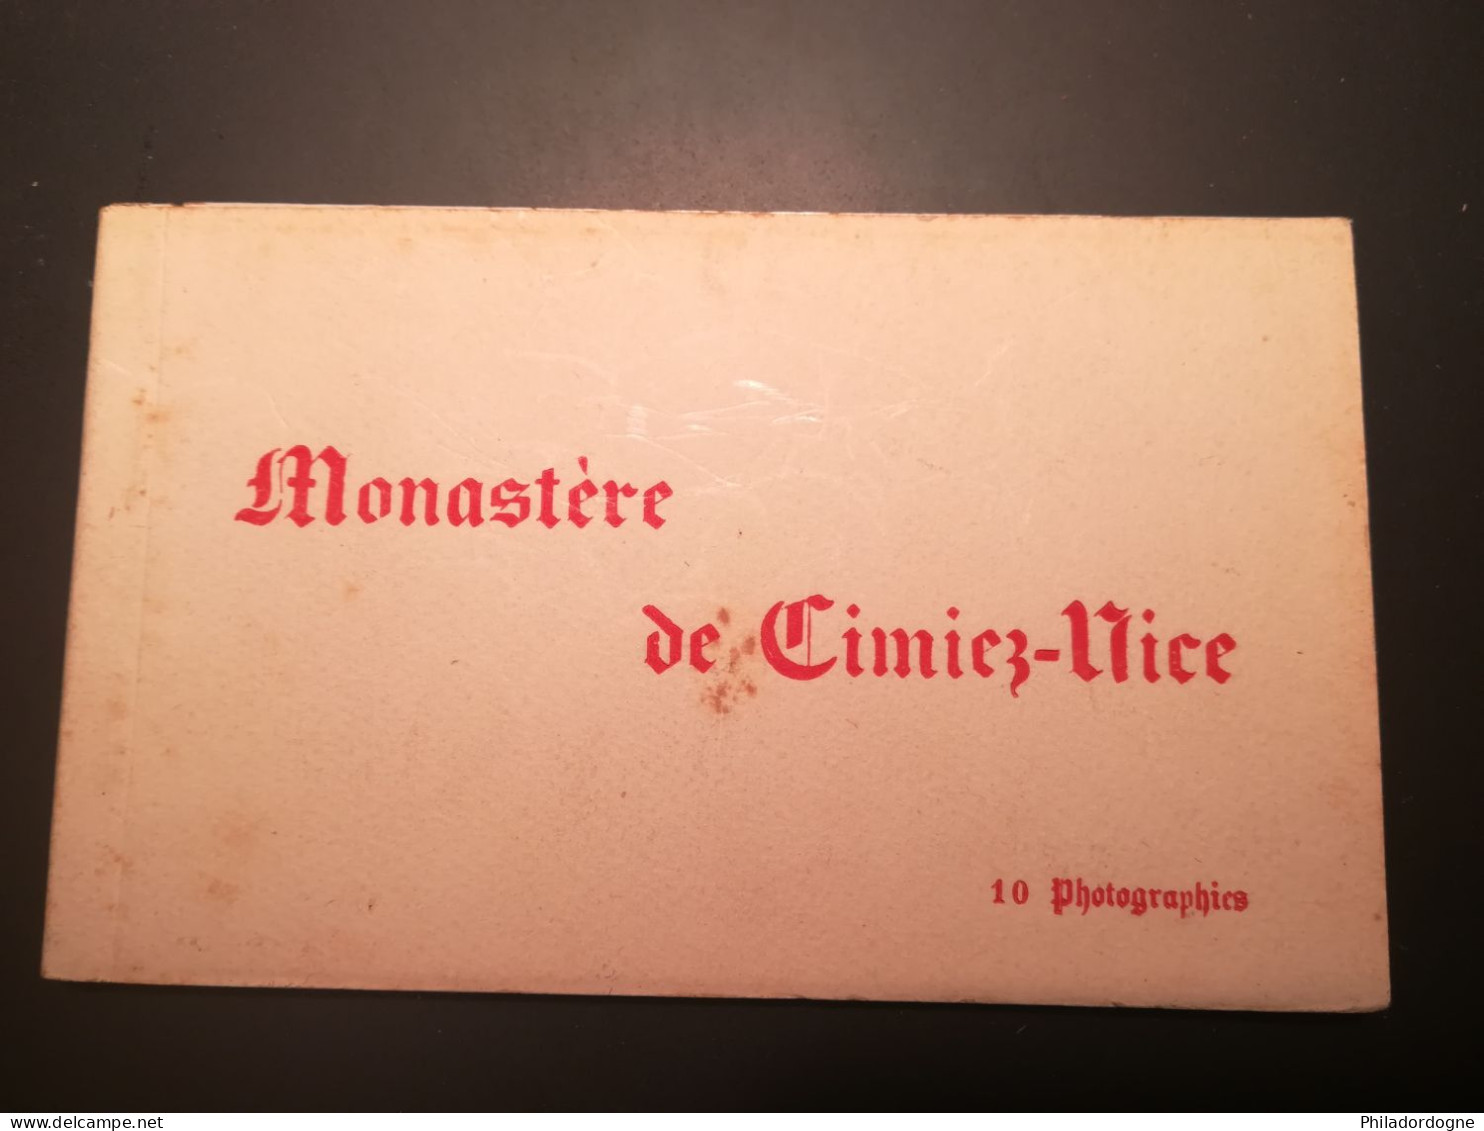 CPA Boite Carnets - (06) Monastère De Cimiez Nice - 10 Photographies - Edition D'art Munier - Lots, Séries, Collections